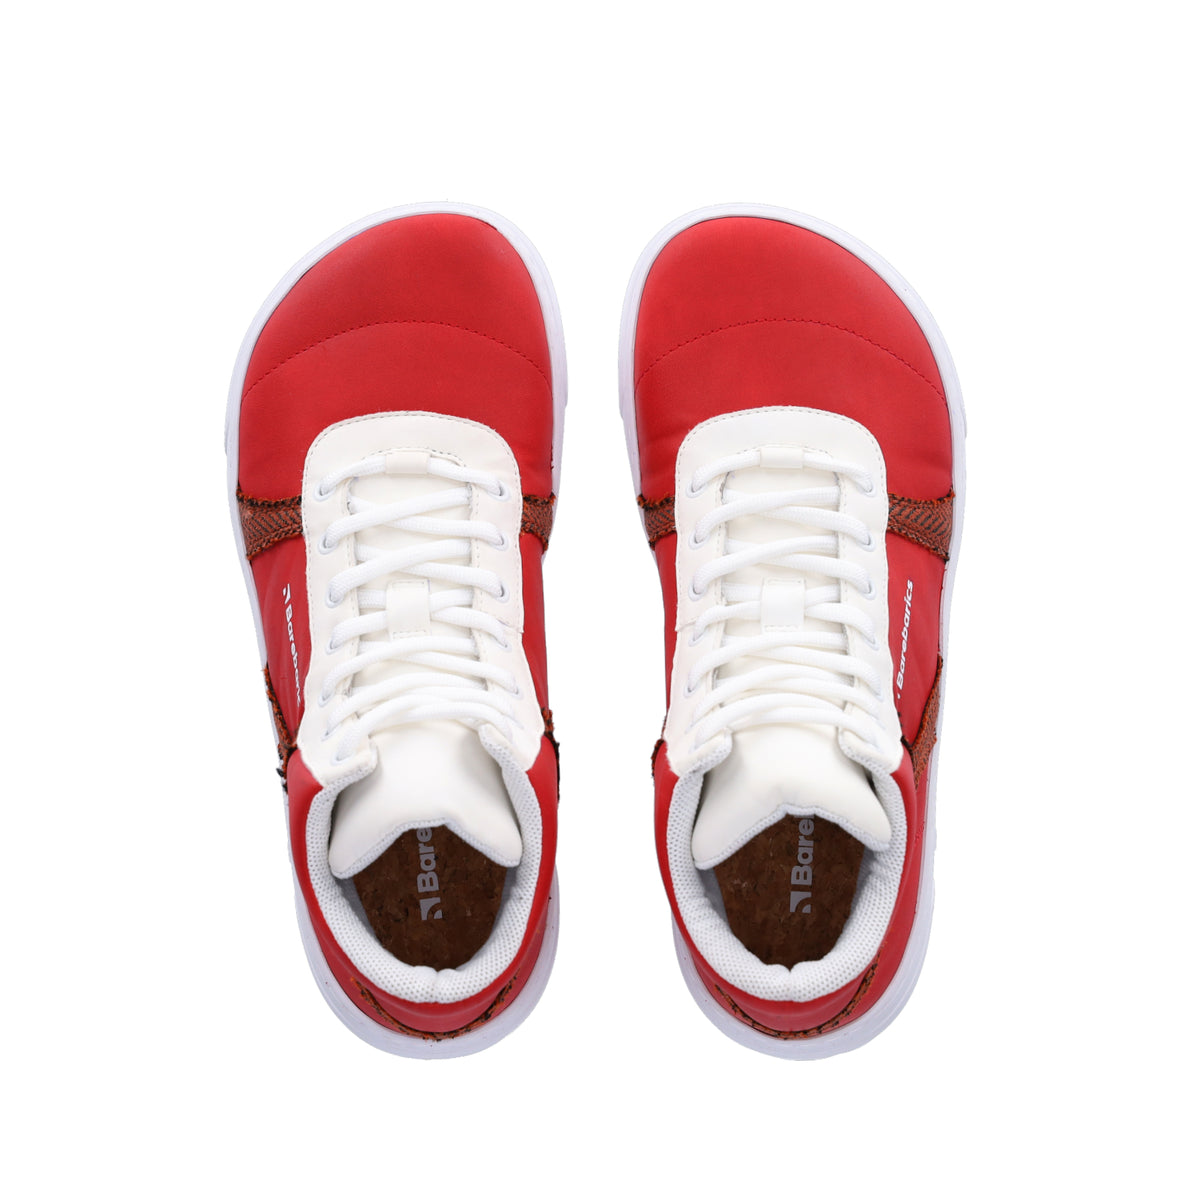 Barefoot Sneakers Barebarics - Hifly - Red & White 5 OzBarefoot Australia